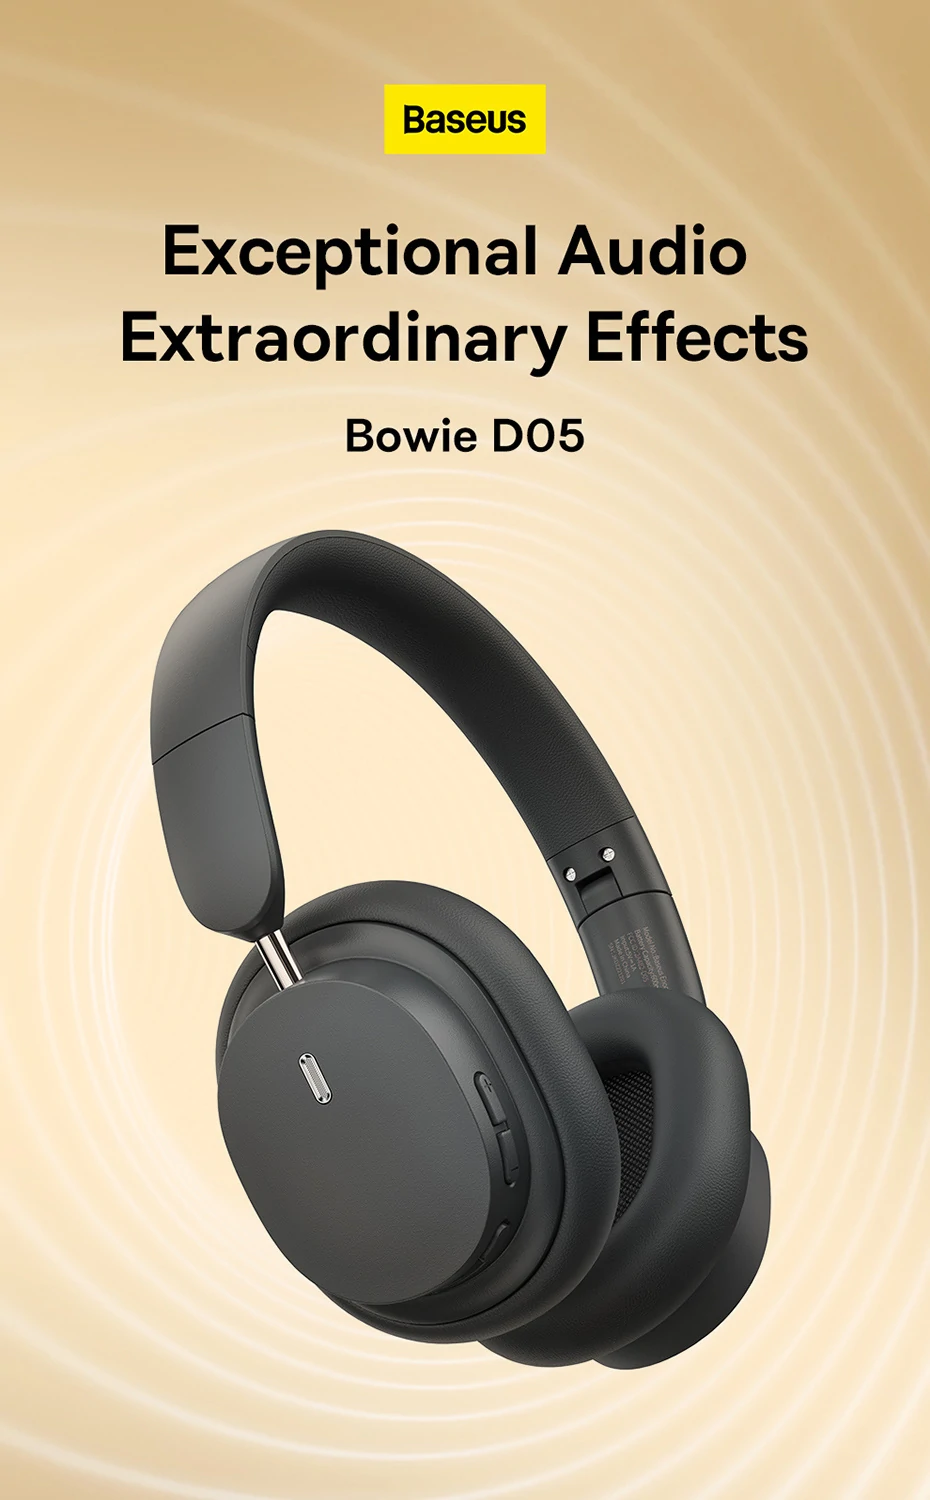 Baseus Bowie D05 Bluetooth fejhallgató különleges 3D képességgel